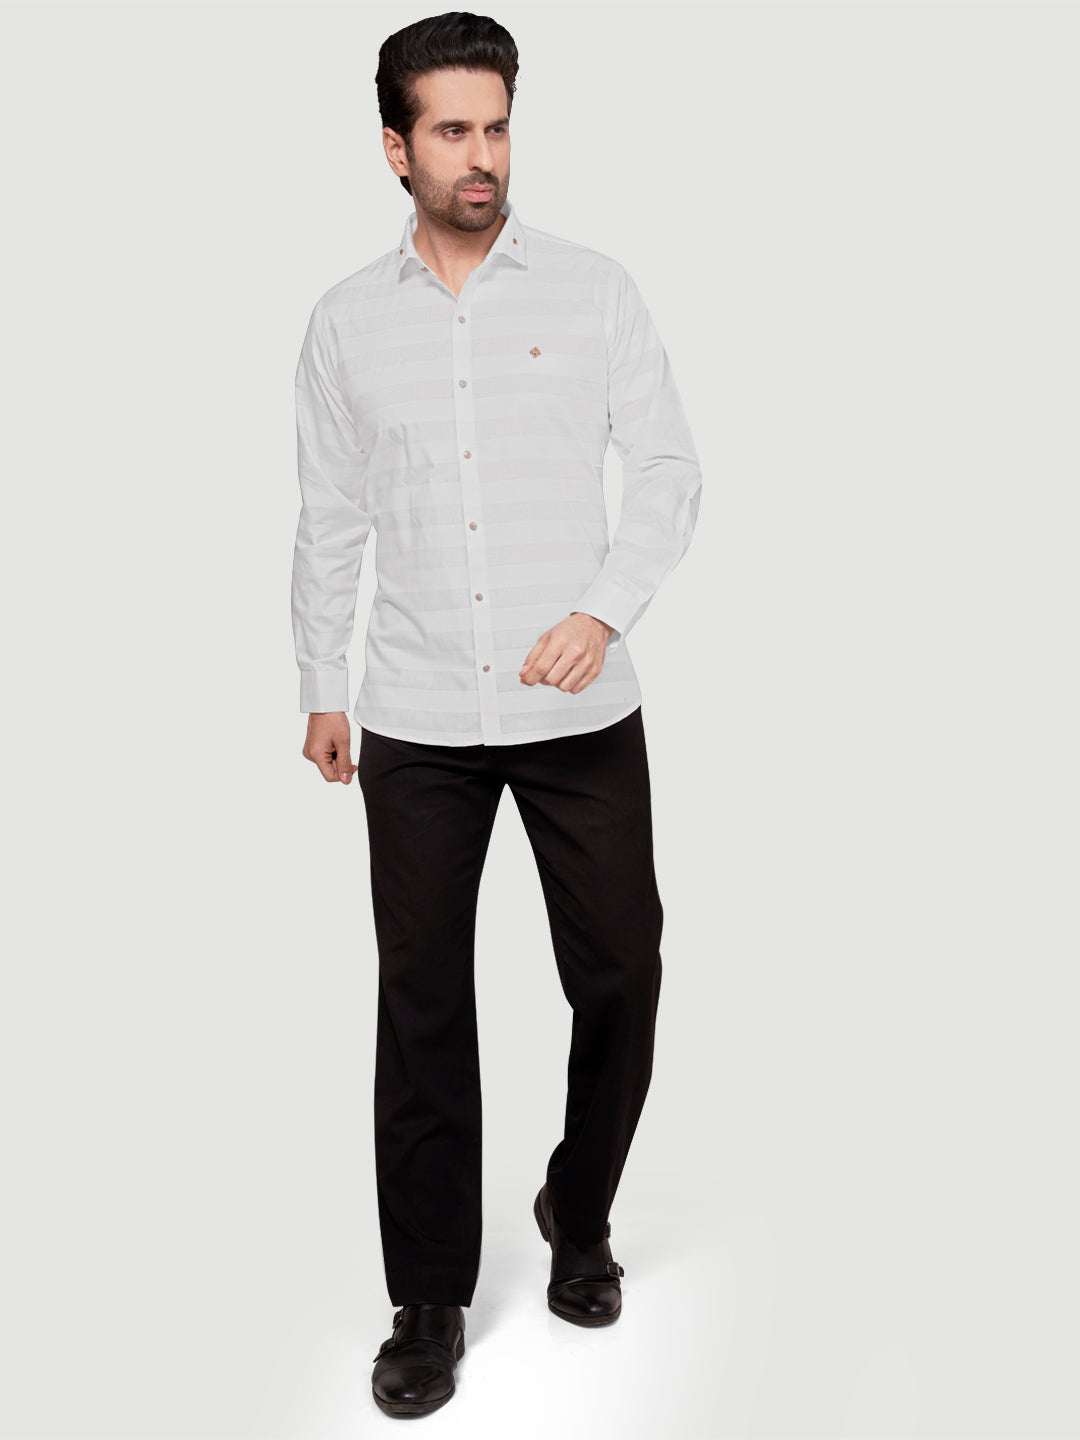 Black and White Men's Weft Designer Shirt White